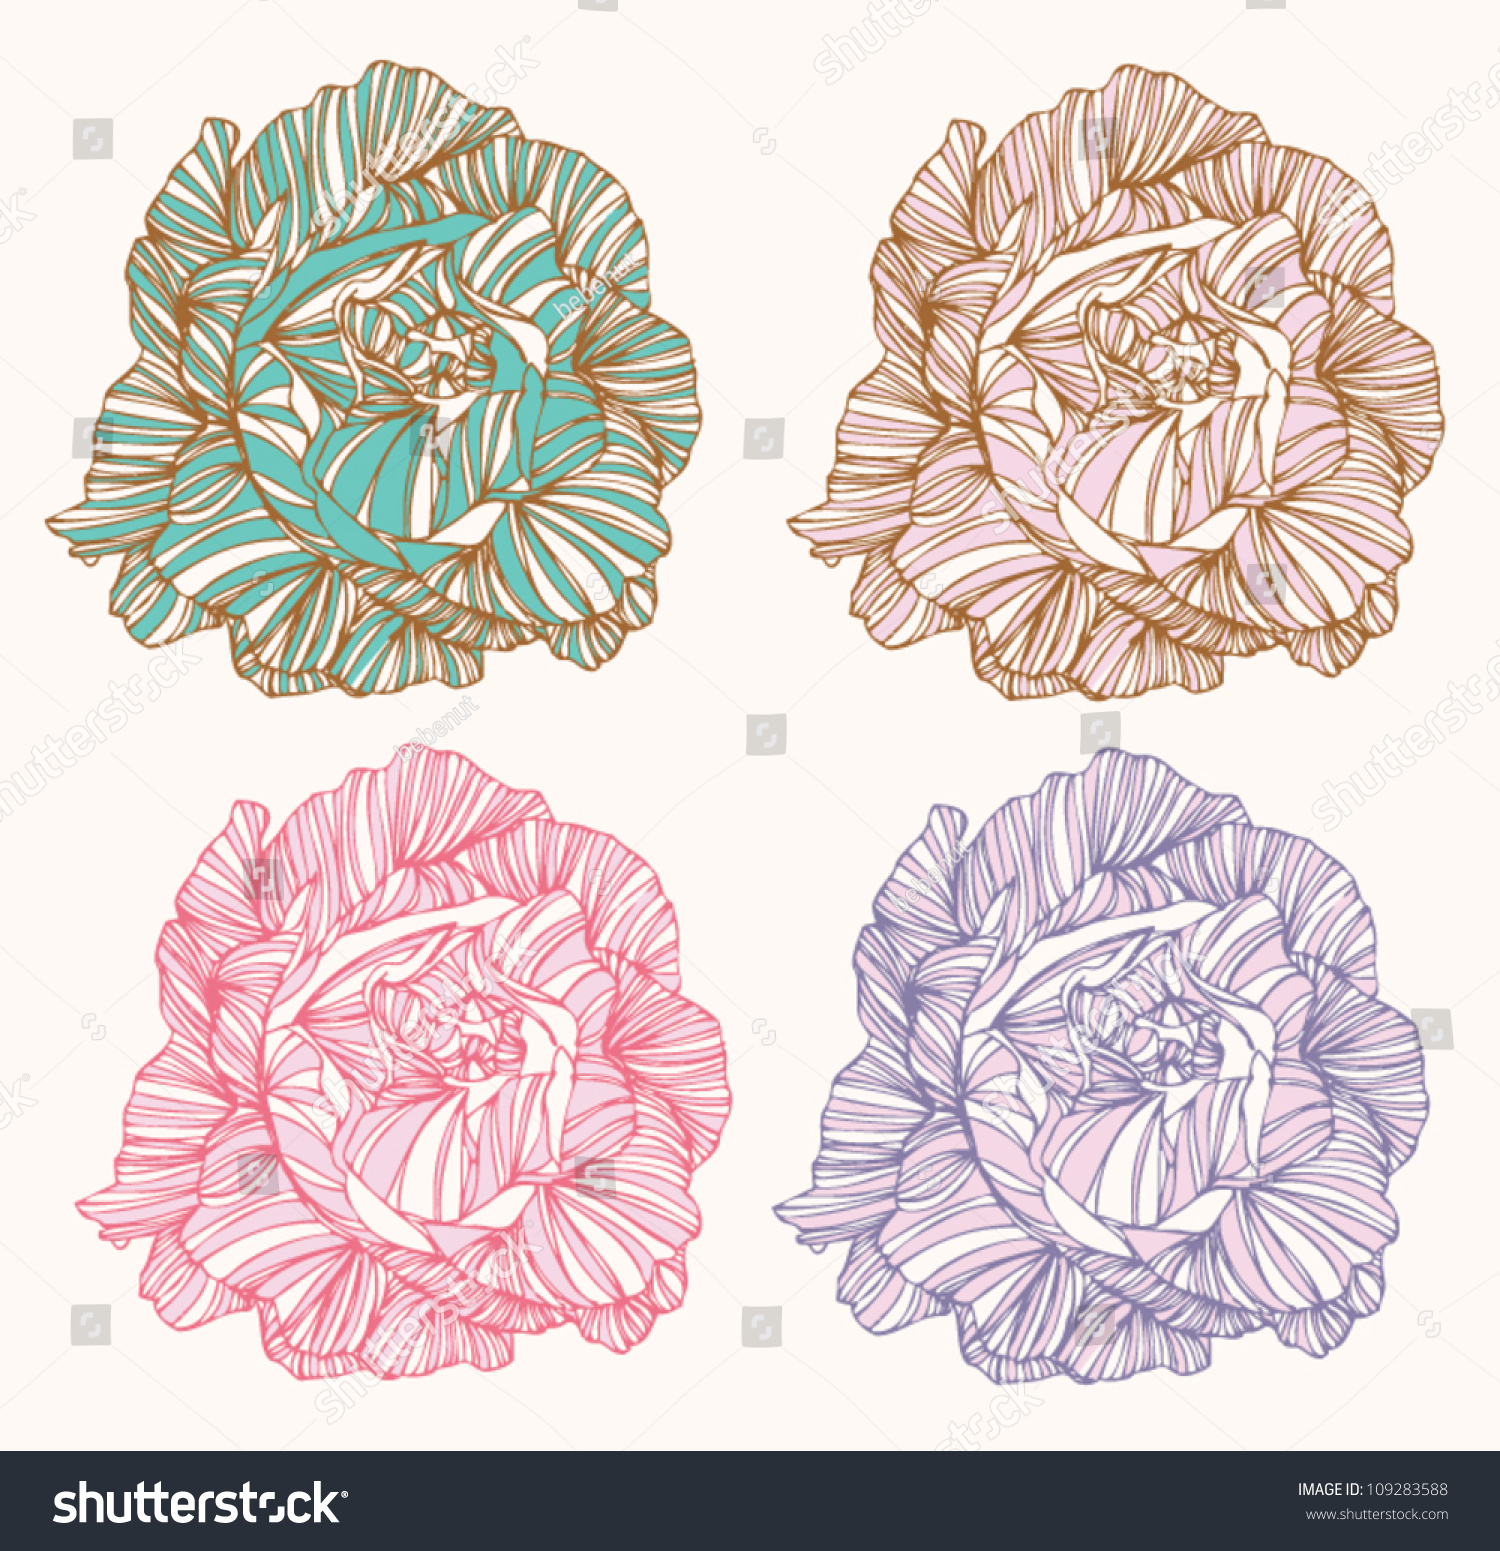 Vector Flower Element For Design - 109283588 : Shutterstock